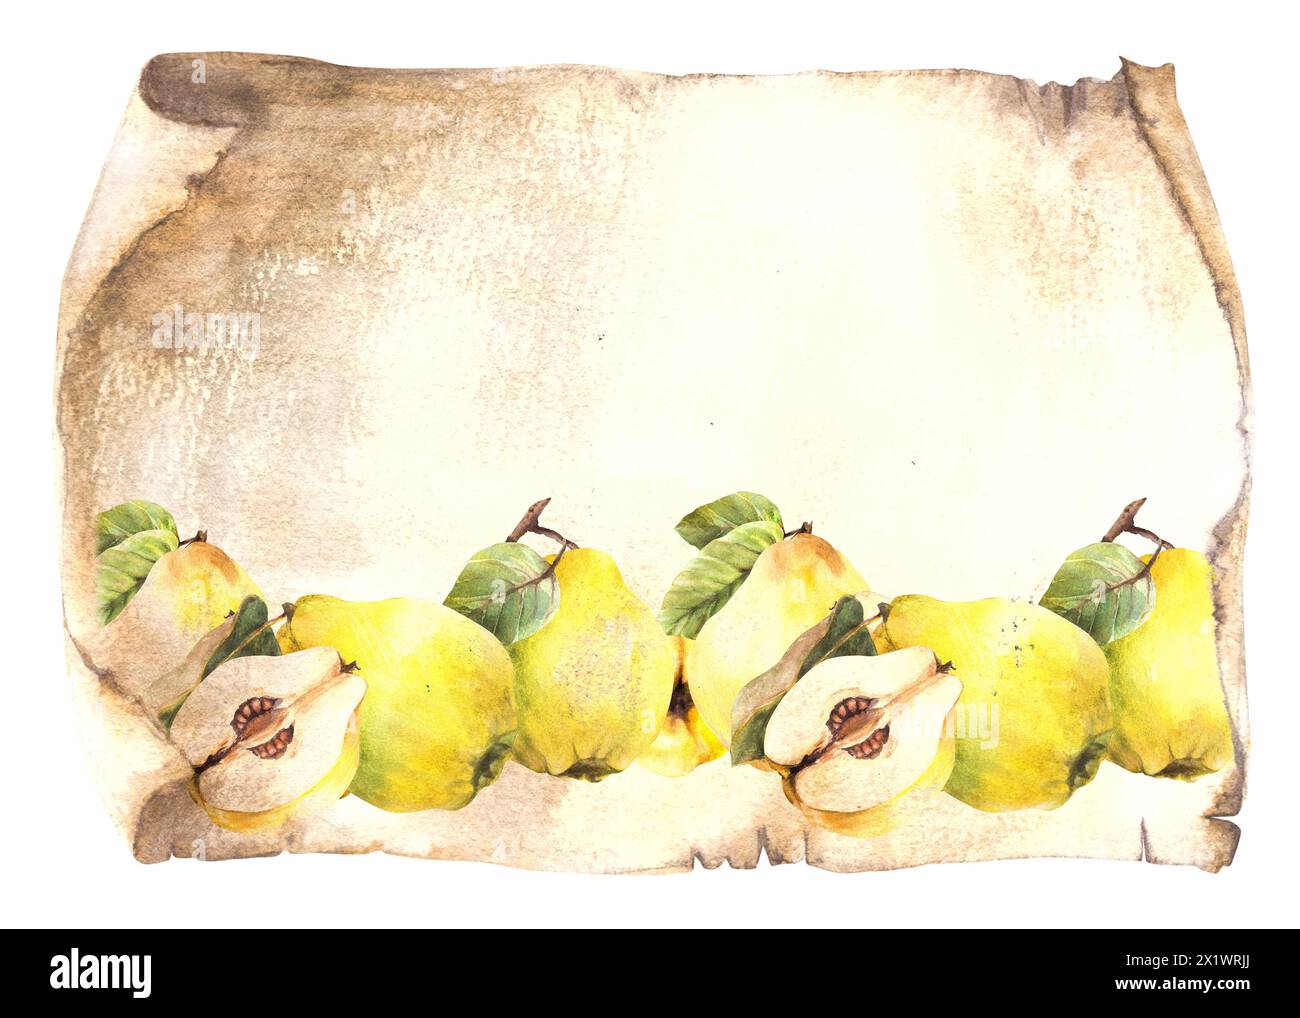 Bordure de fruit de coing jaune mûr sur une vieille feuille de papyrus, fond de papier de défilement vintage. Aquarelle illustration dessinée à la main Clipart pour le menu alimentaire Banque D'Images